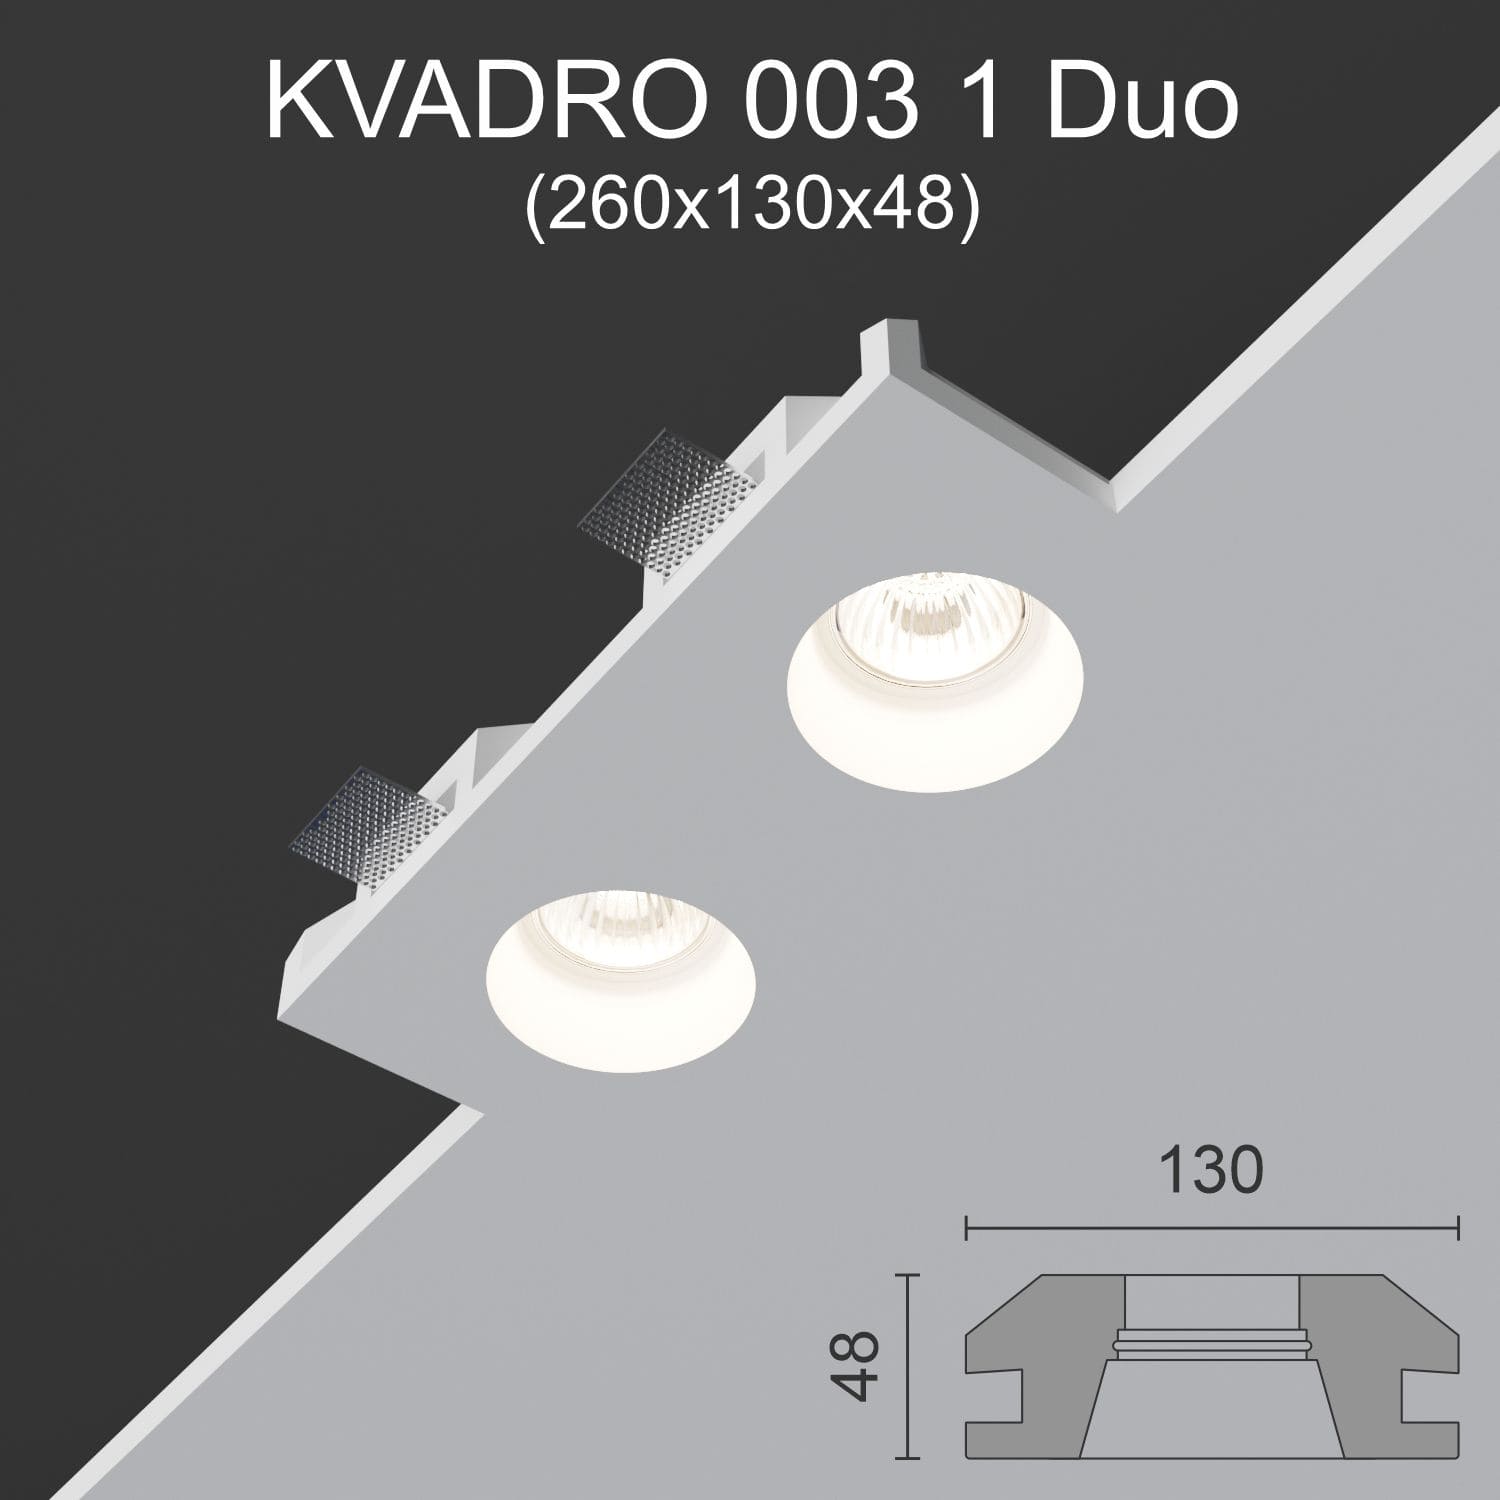 Светильник встраиваемый точечный гипсовый KVADRO 003 1 Duo